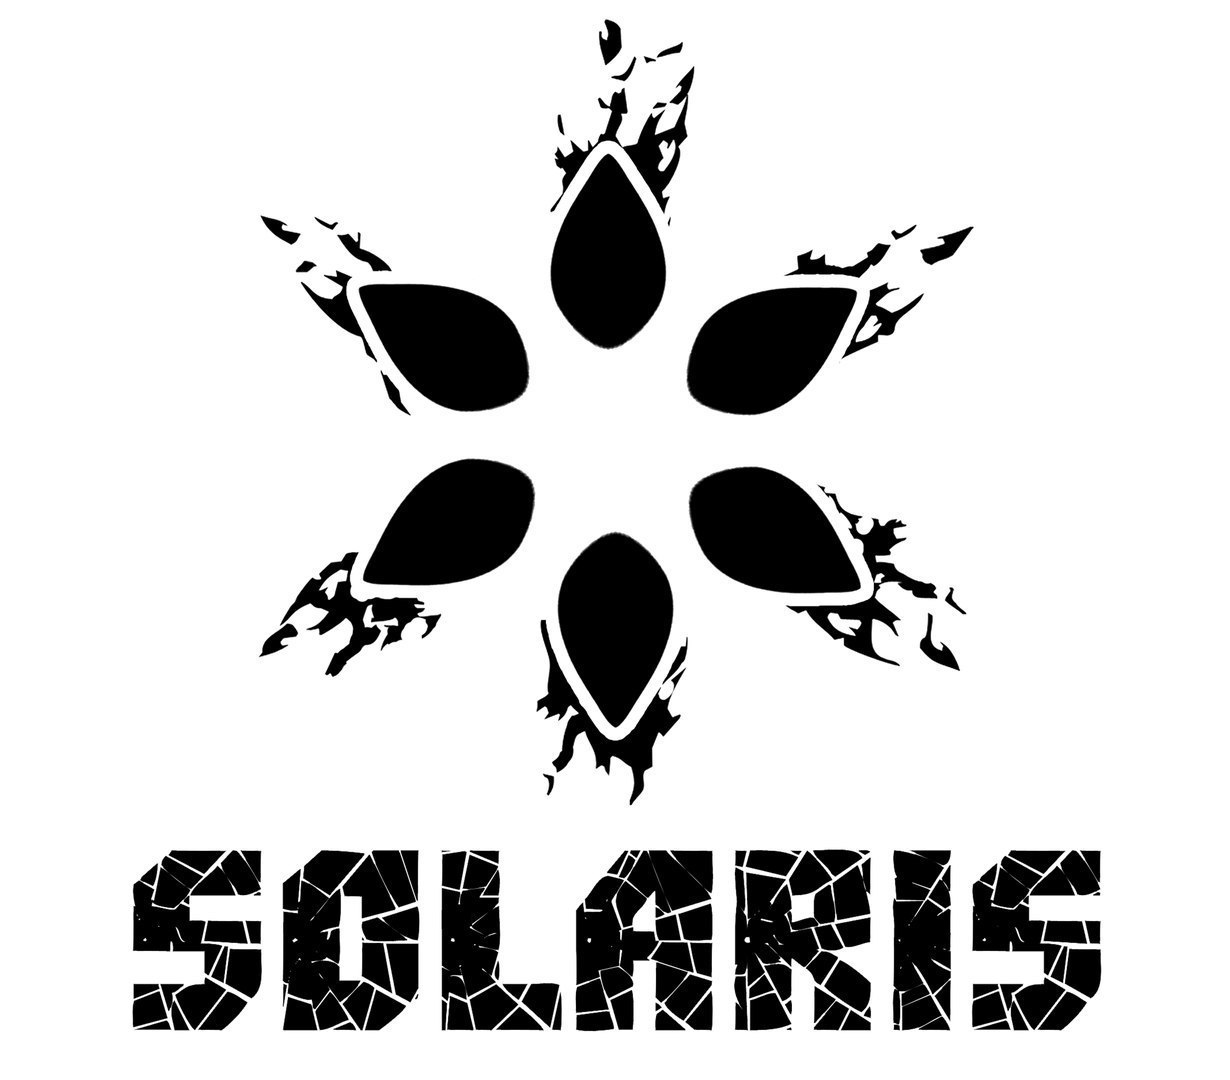 Solaris Bowl